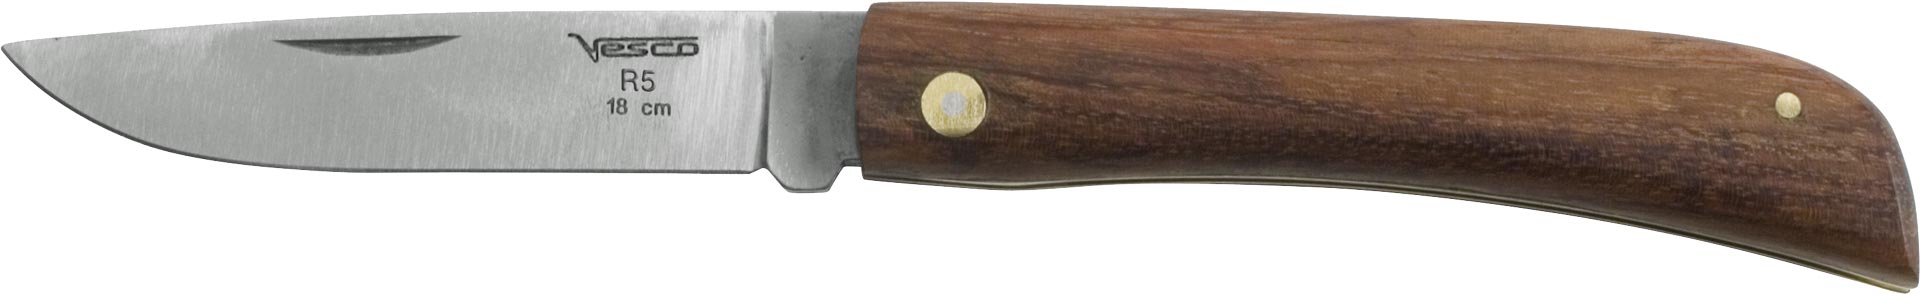 Univerzální zahradnický nůž 18 cm